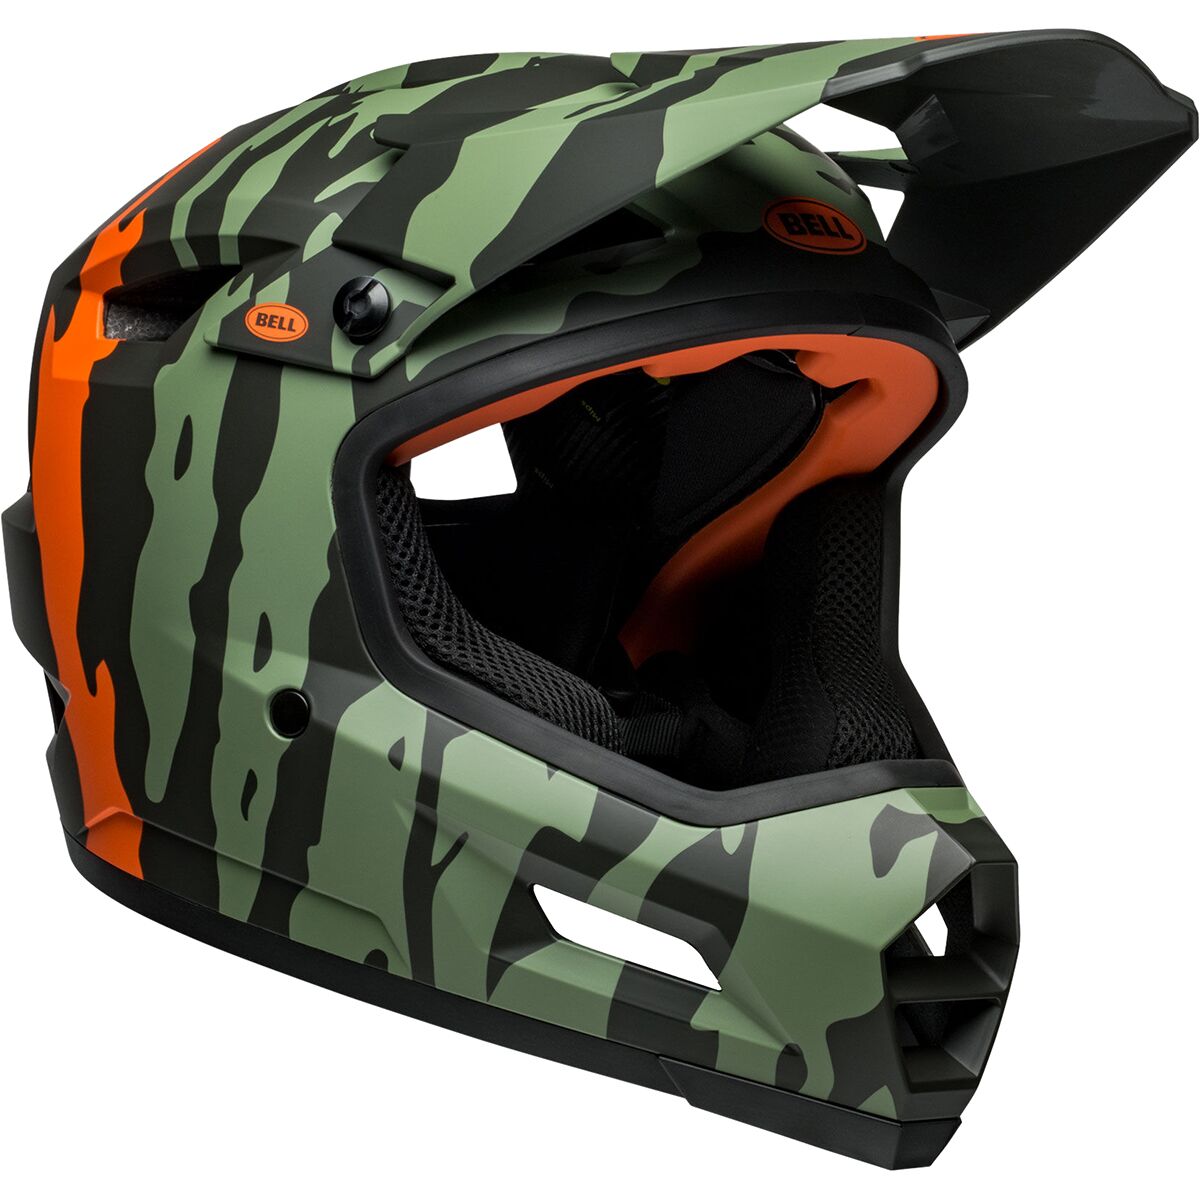 Bell Sanction 2 DLX Mips Helmet Matte Dark Green/Orange, XL